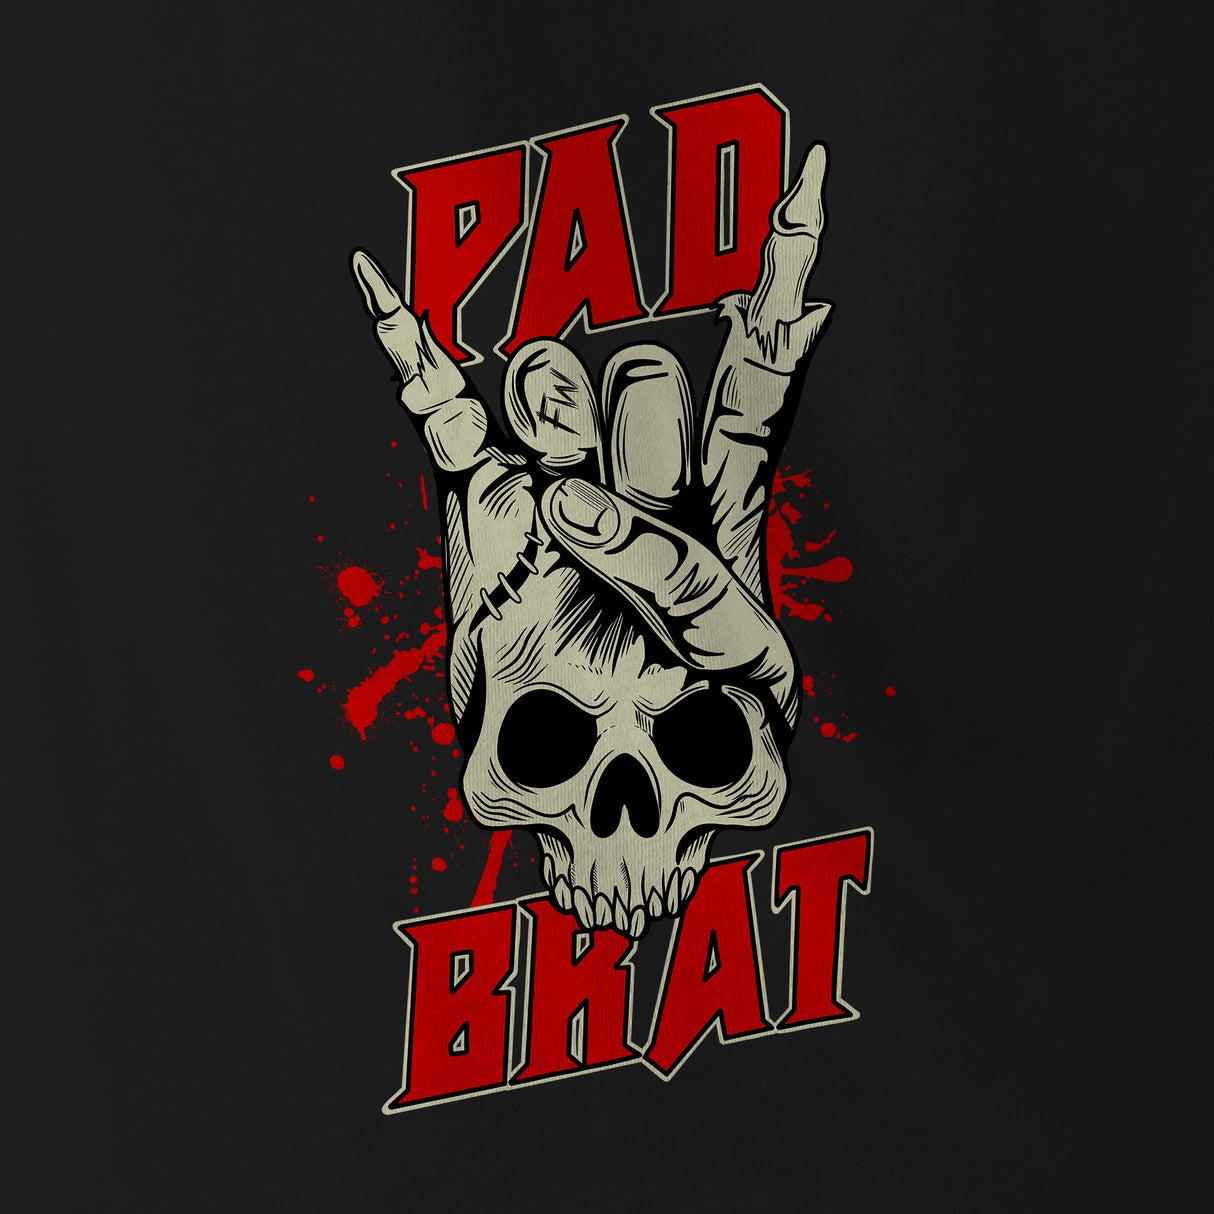 PAD BRAT - Force Wear HQ - T-SHIRTS